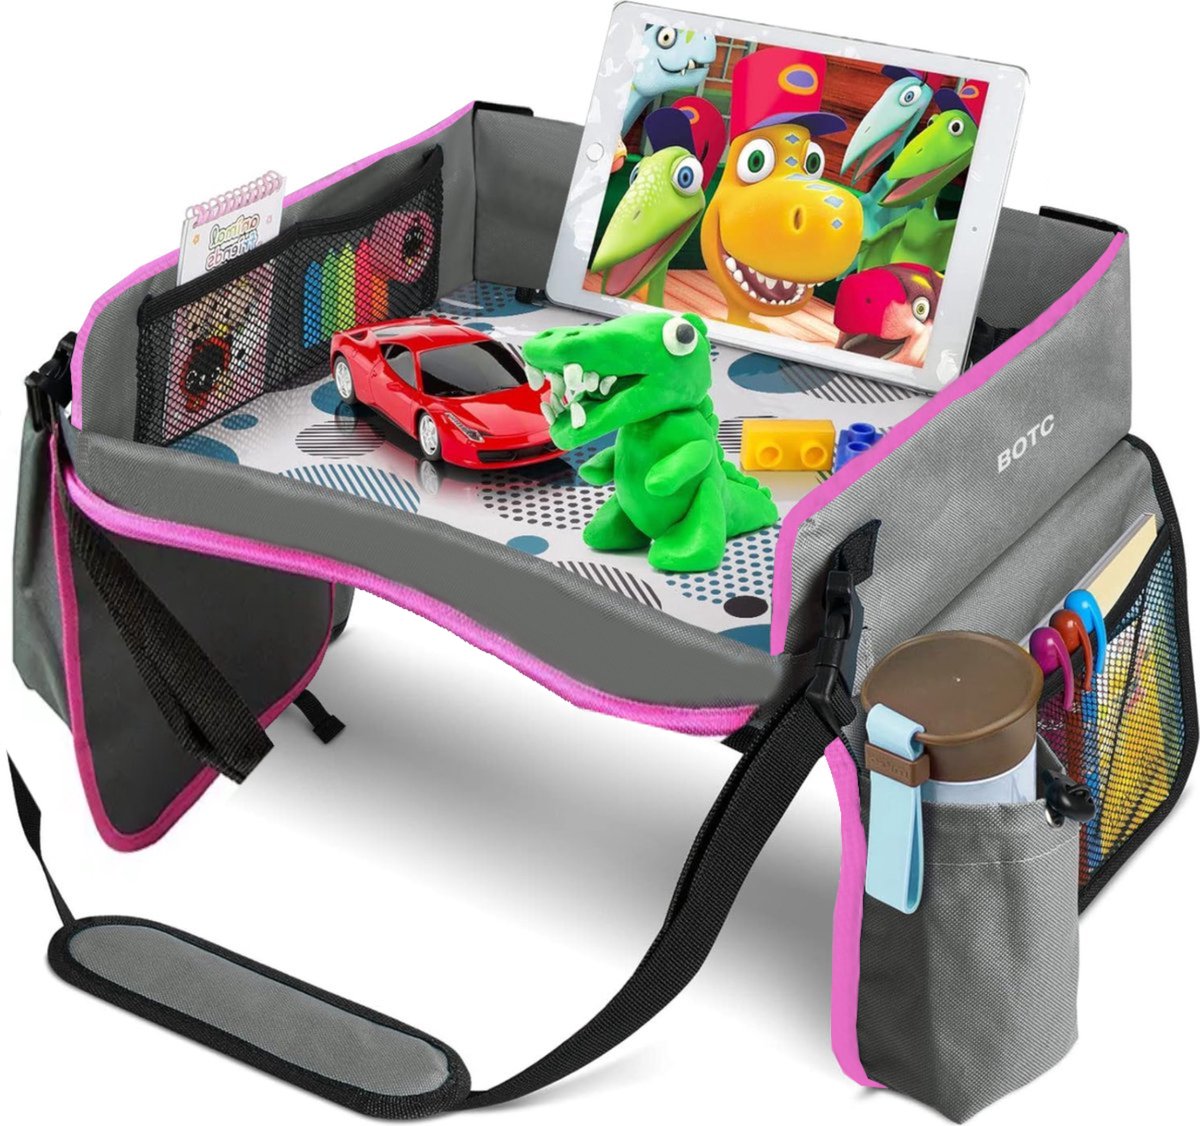 BOTC Reistafel voor Kinderen met Tekentafel & Tablethouder - Opvouwbaar - Auto Organizer - Roze - BOTC